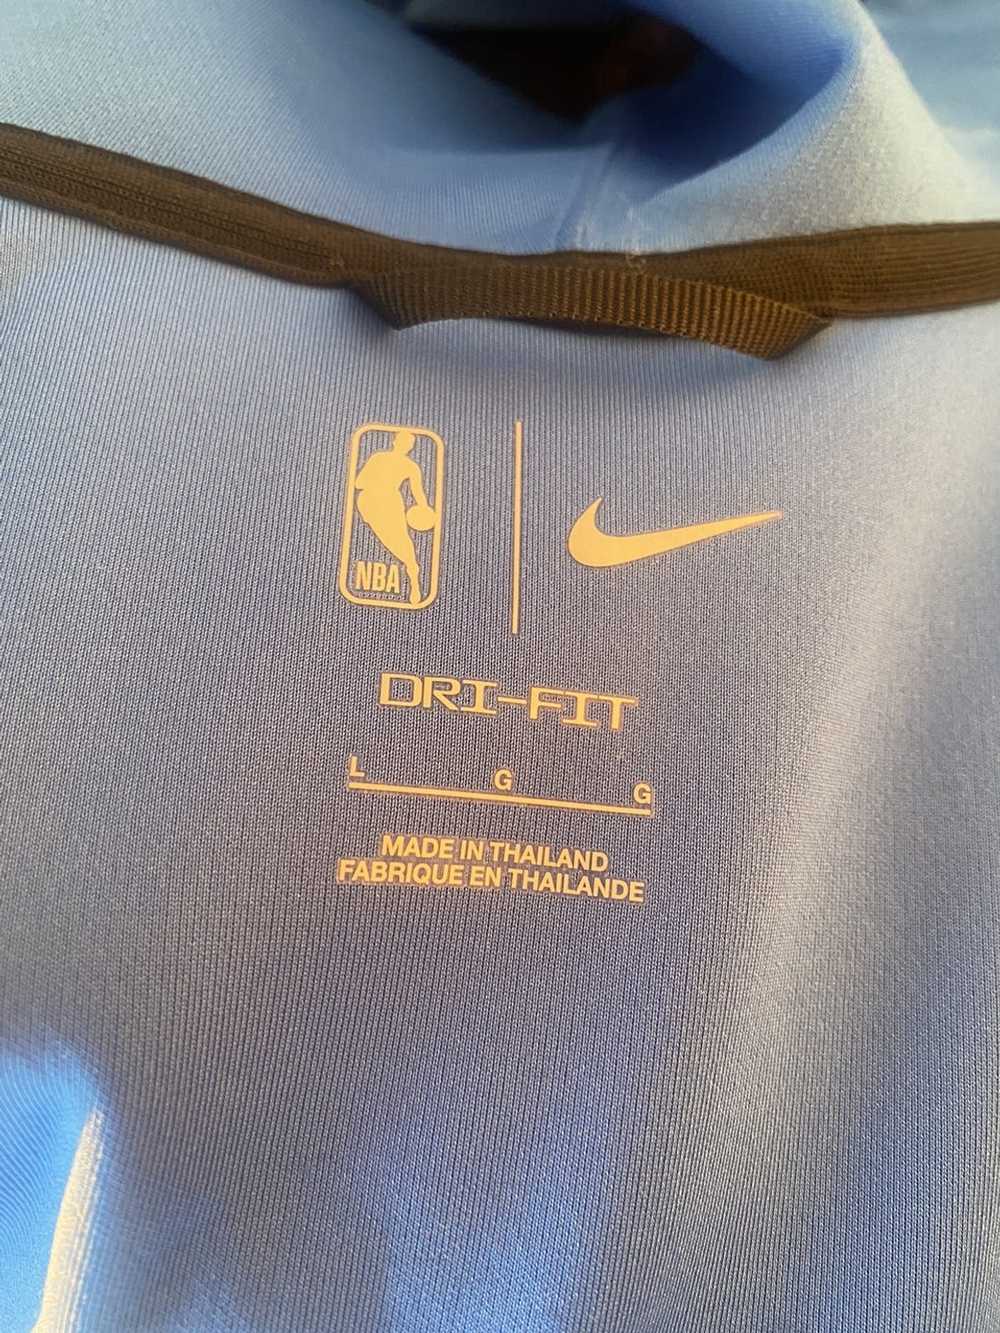 NBA × Nike Nike NBA on court zip up hoodie - image 10